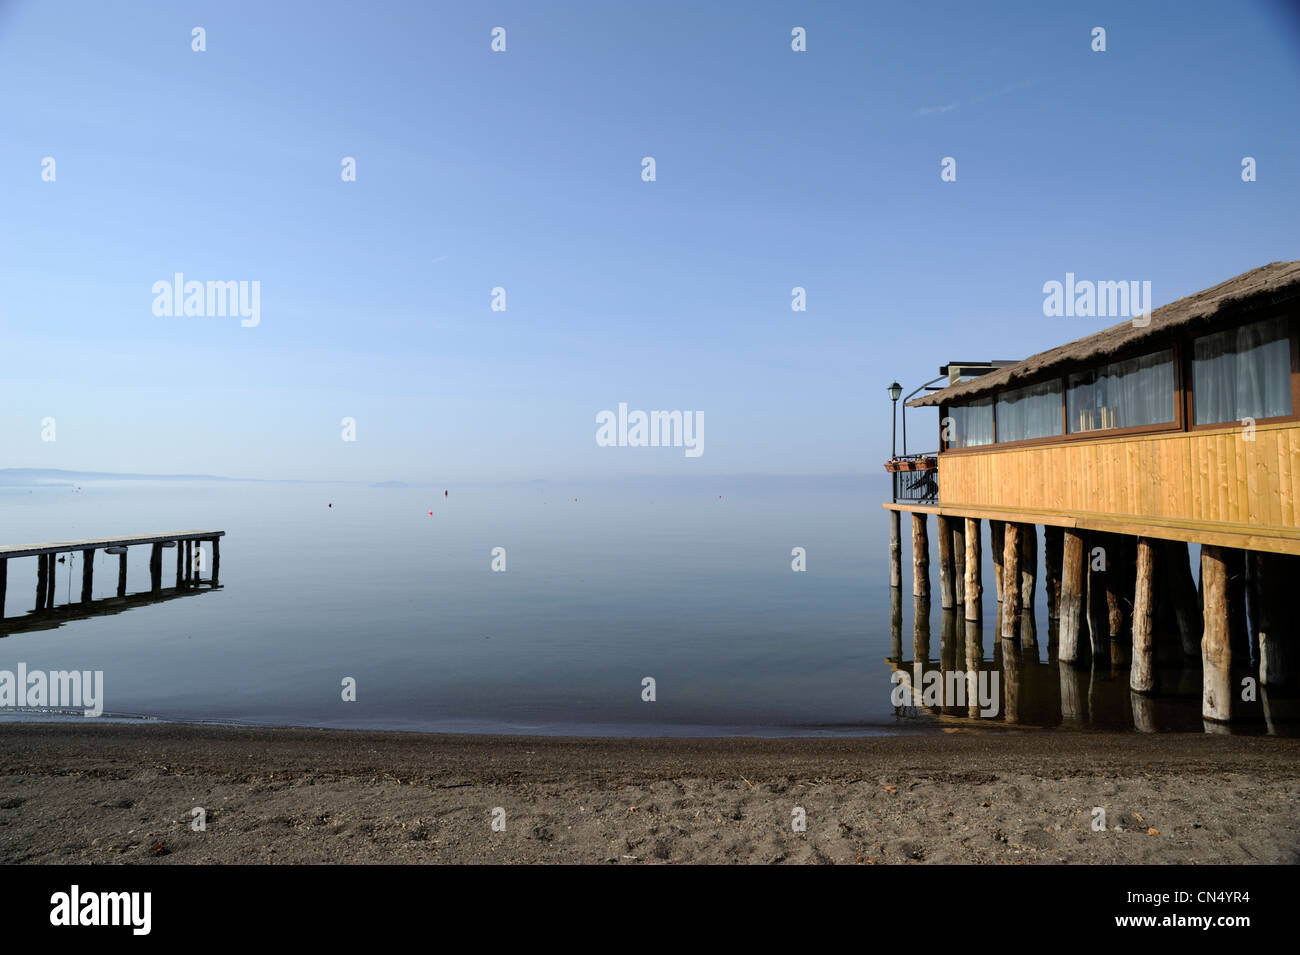 italy, lazio, bolsena, jetty and lakeside restaurant Stock Photo